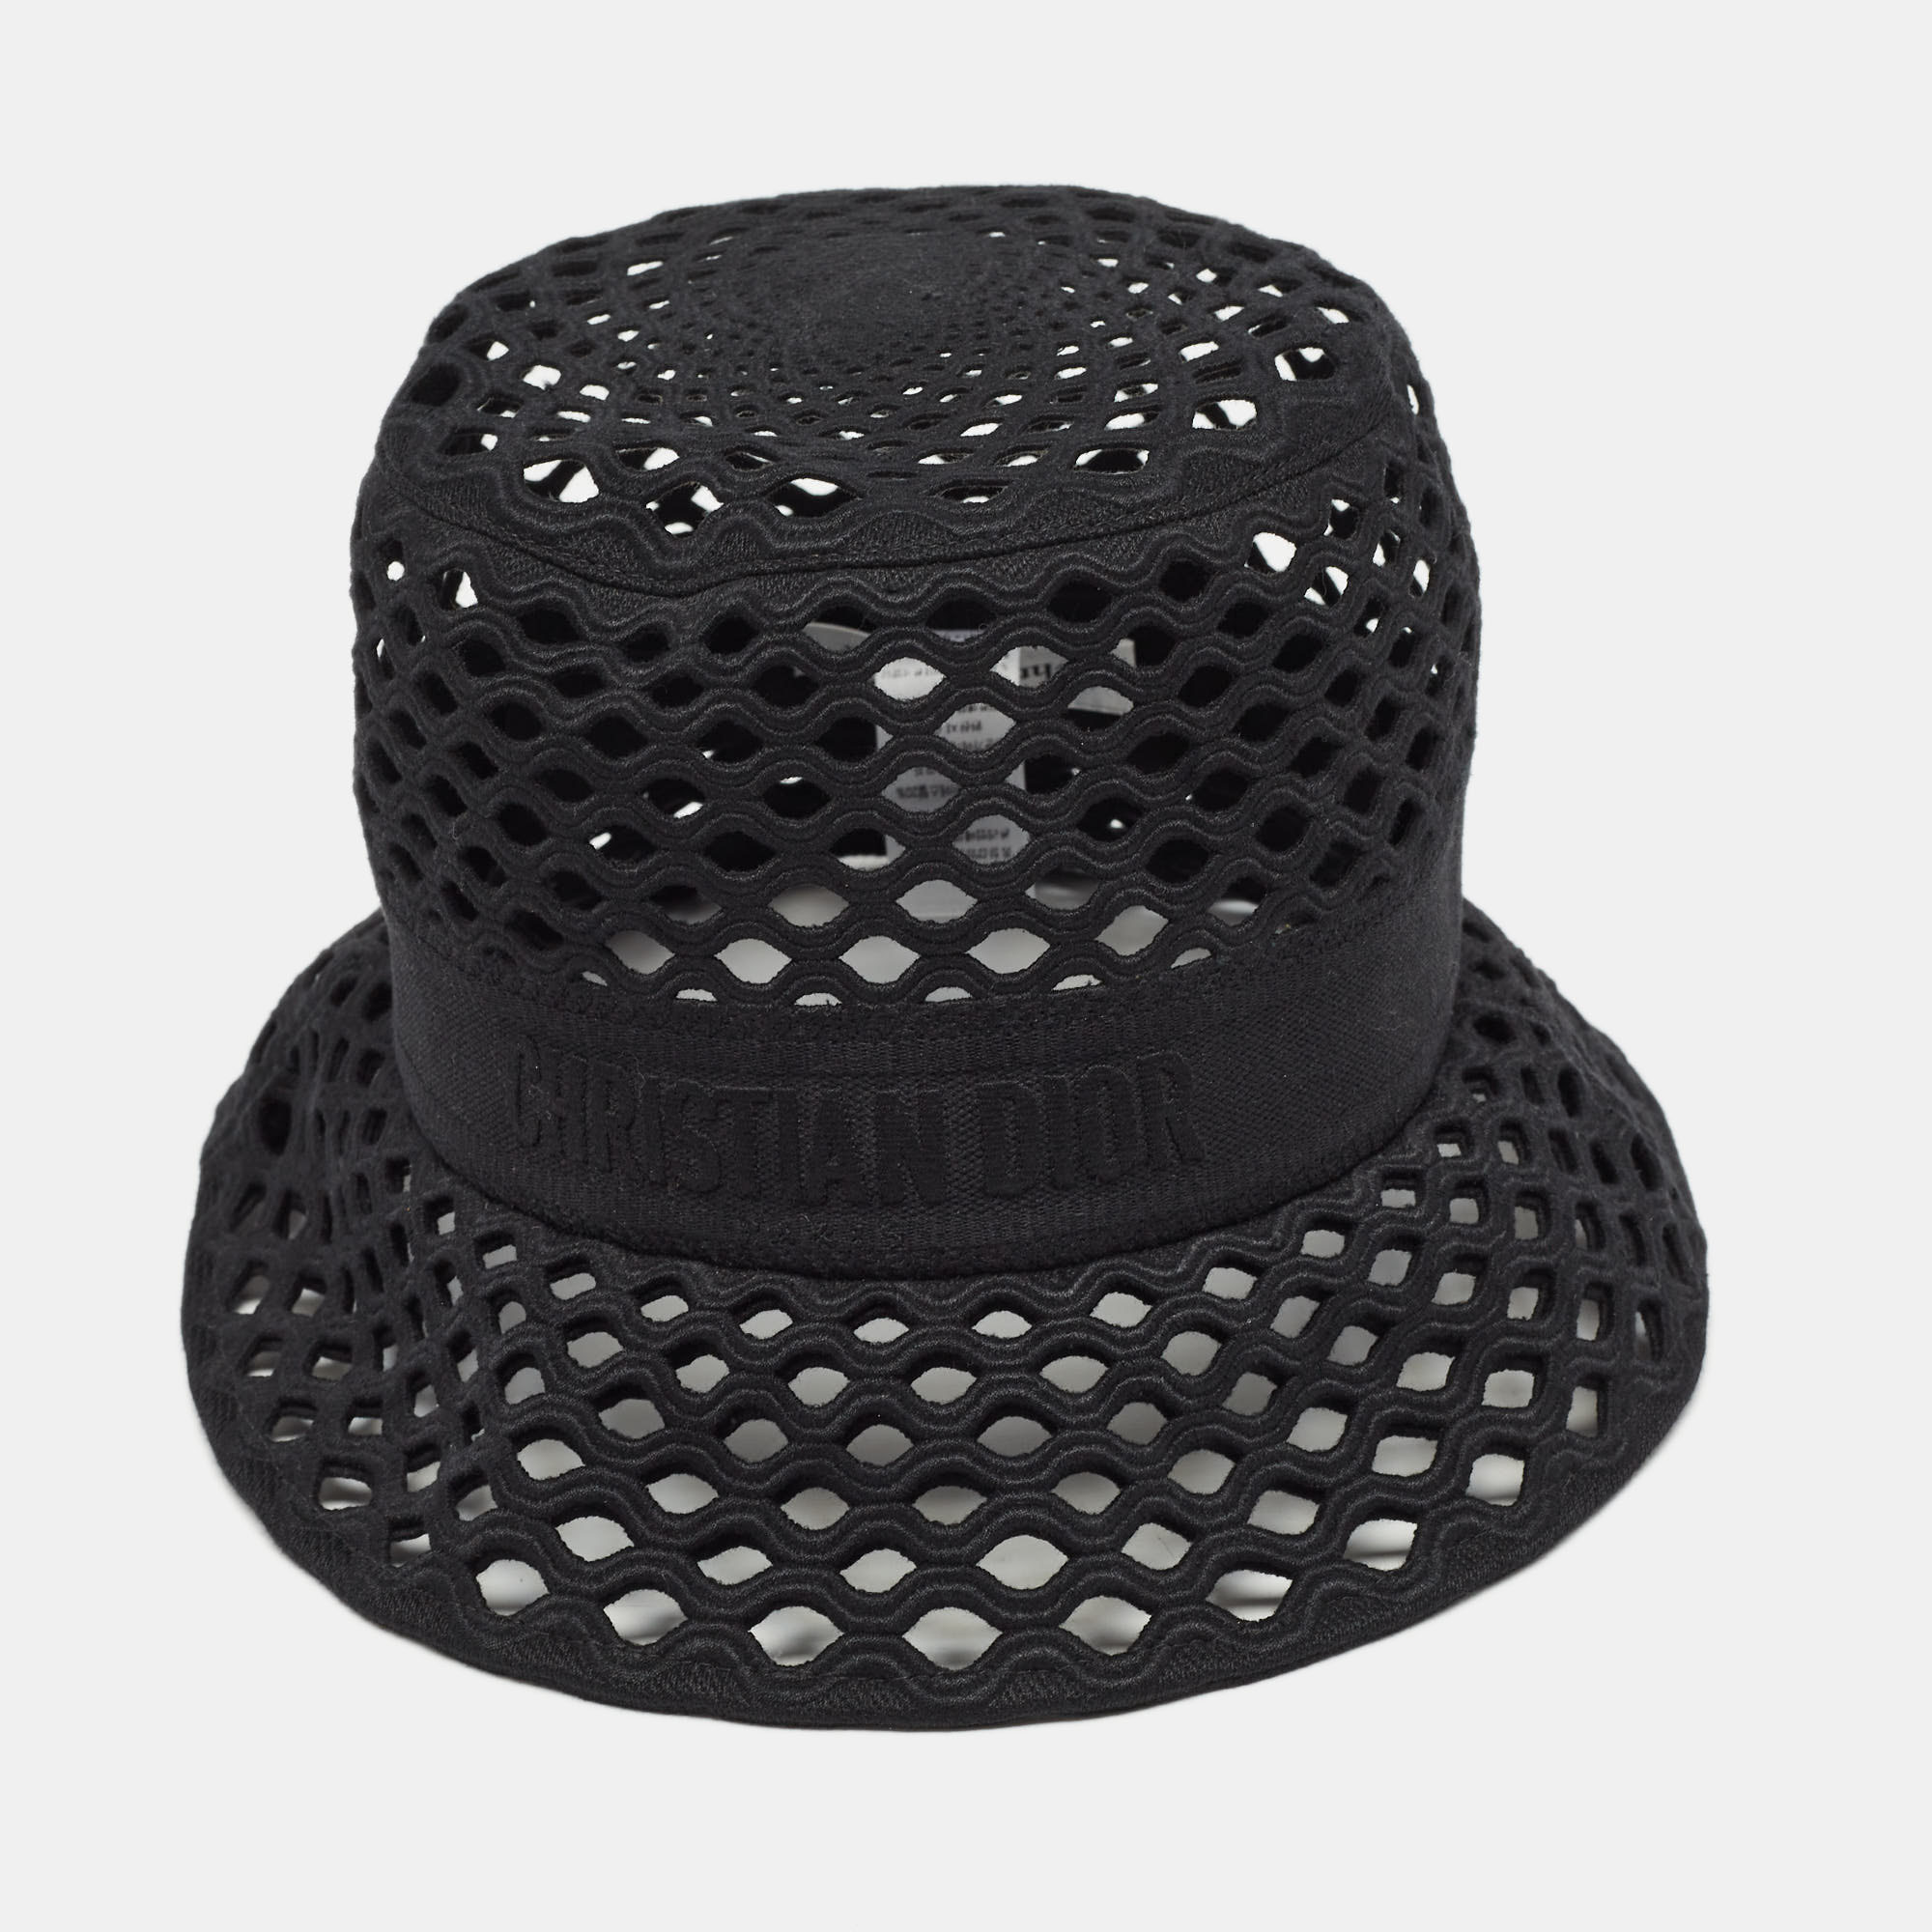 Dior Black Mesh Bucket Hat Size 58